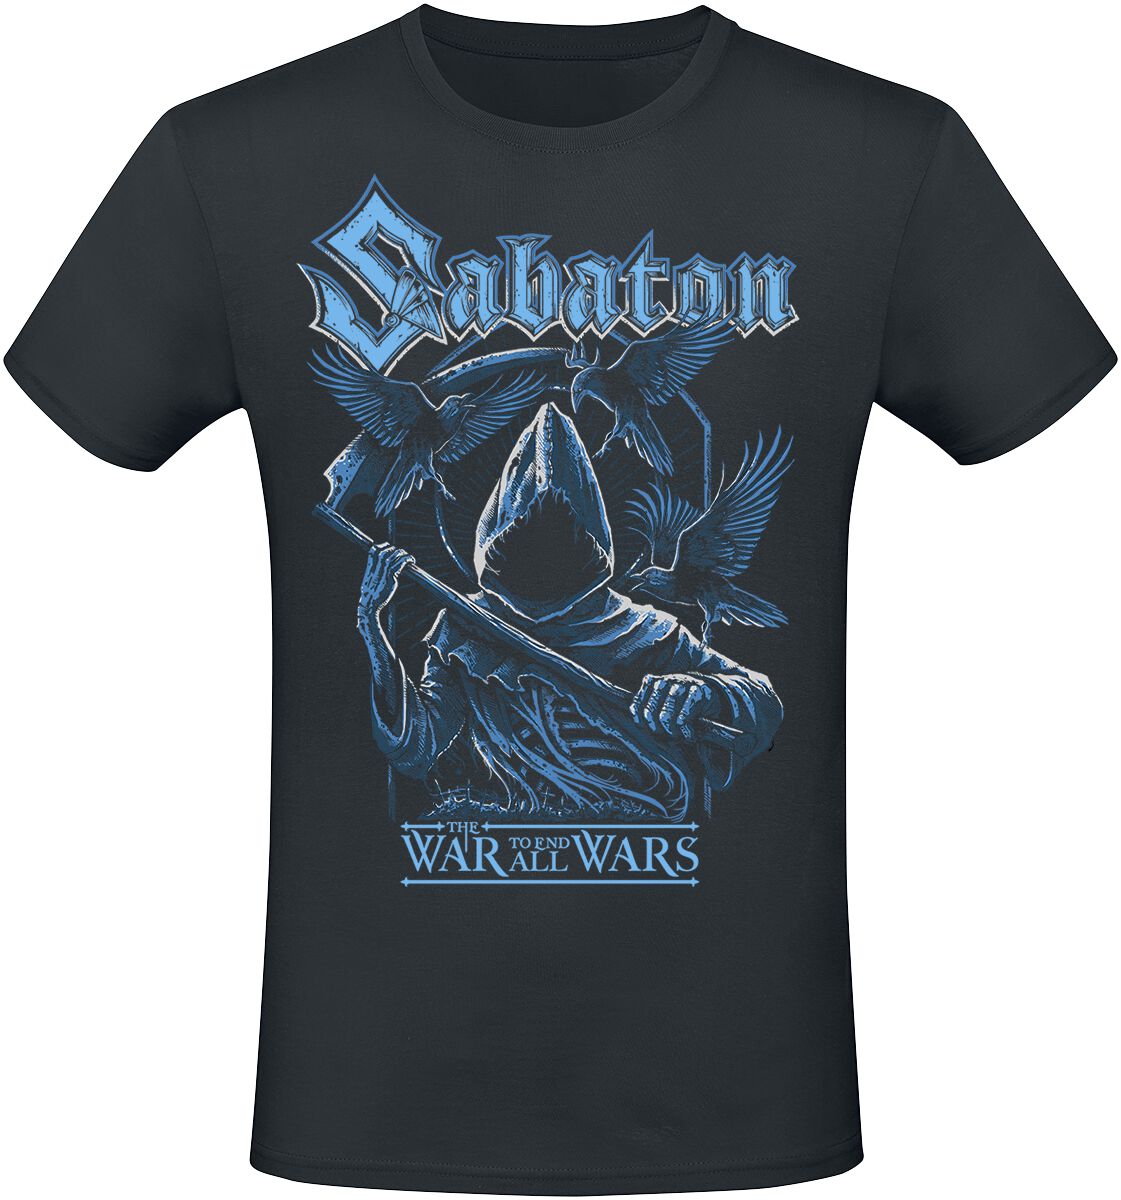 Sabaton T-Shirt - Reaper - S bis 5XL - für Männer - Größe S - schwarz  - EMP exklusives Merchandise!